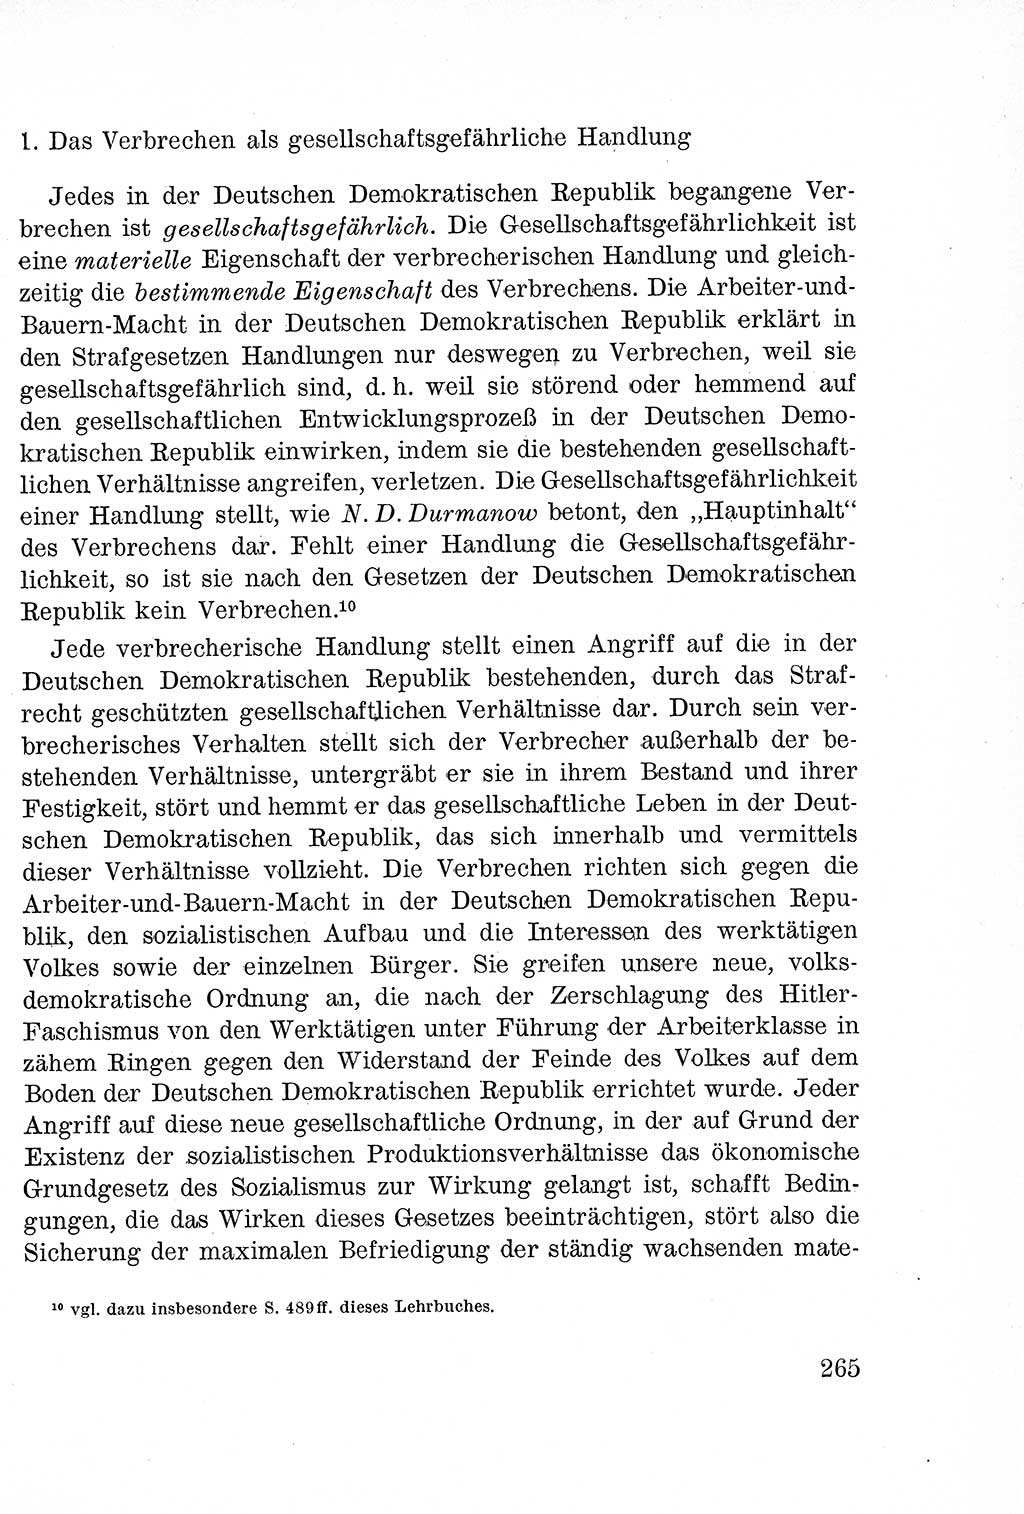 Lehrbuch des Strafrechts der Deutschen Demokratischen Republik (DDR), Allgemeiner Teil 1957, Seite 265 (Lb. Strafr. DDR AT 1957, S. 265)